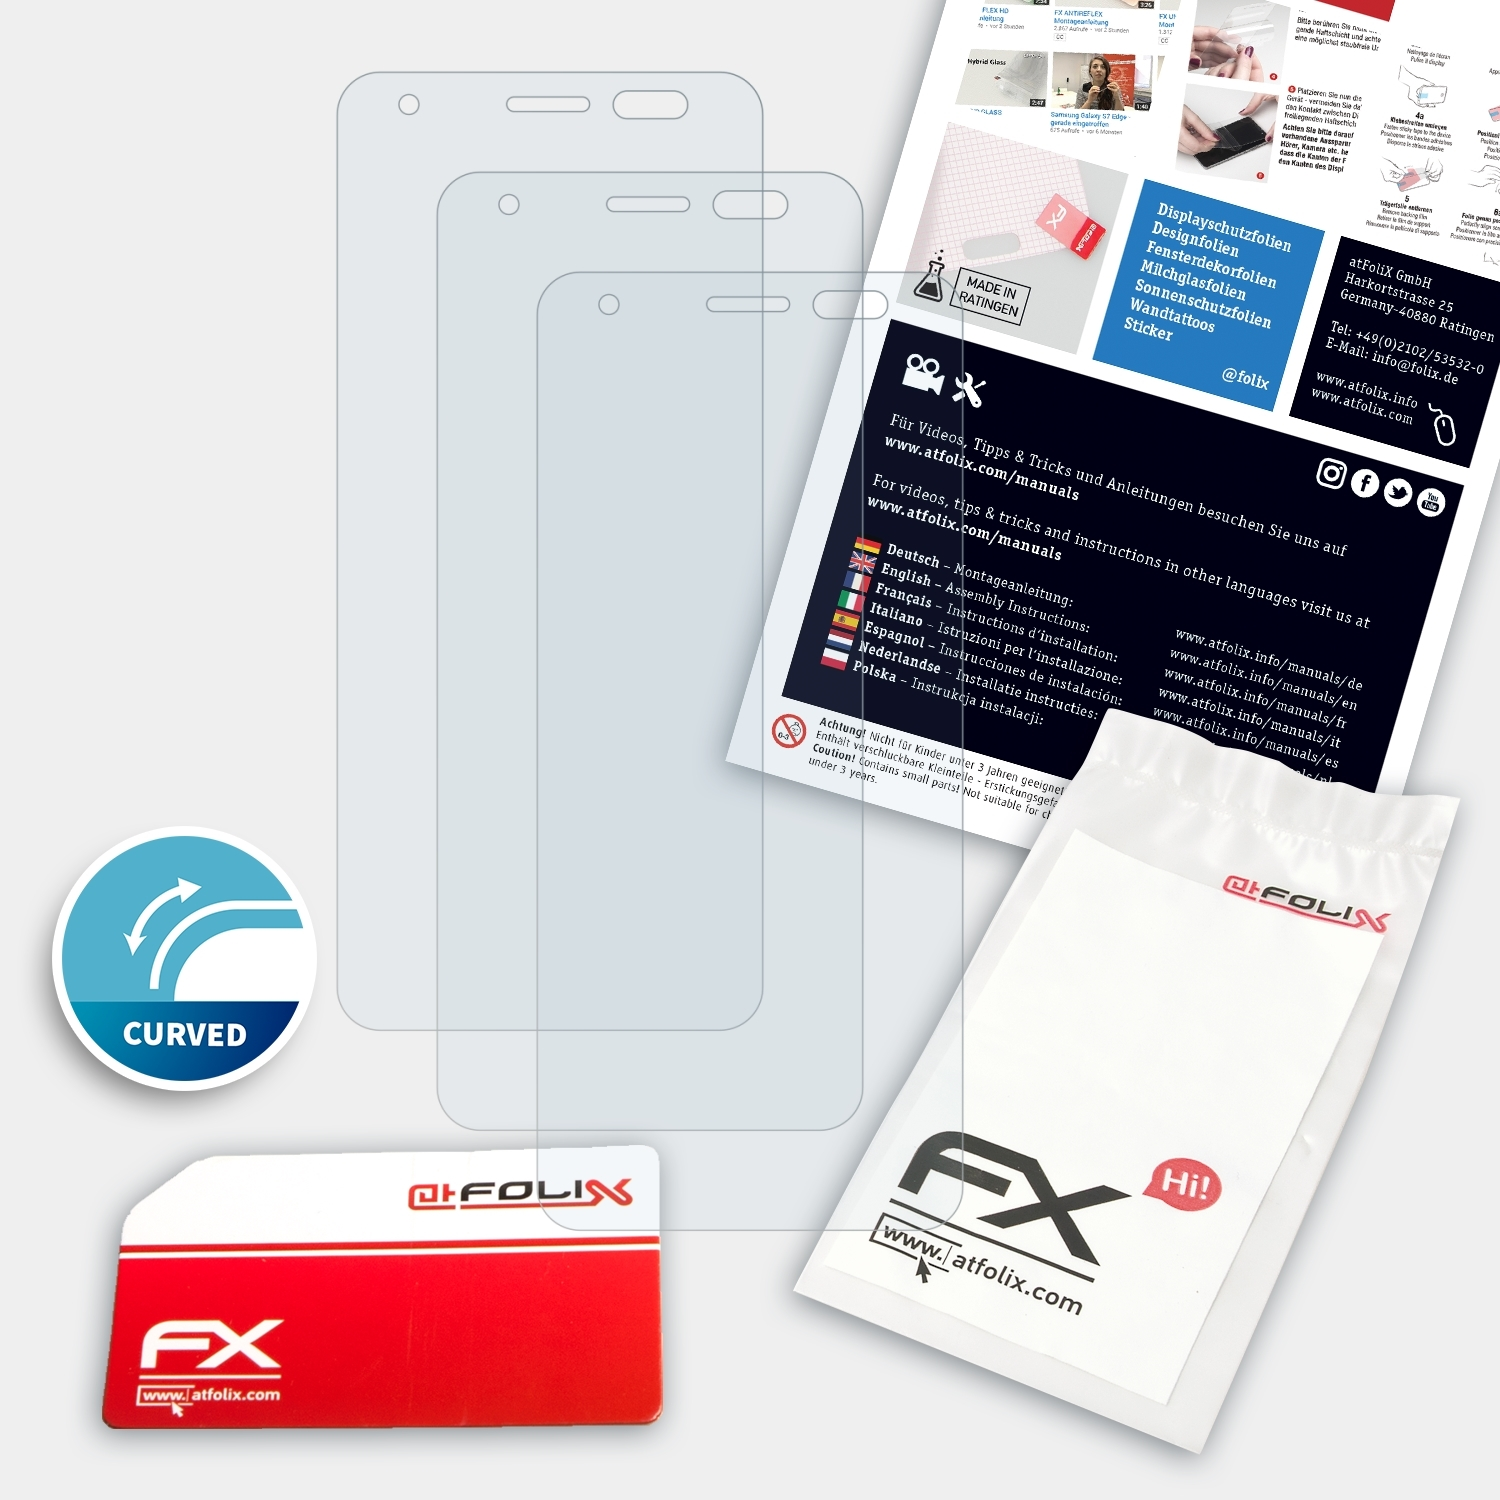 ATFOLIX 3x FX-ActiFleX Displayschutz(für Energizer P490) Max Power